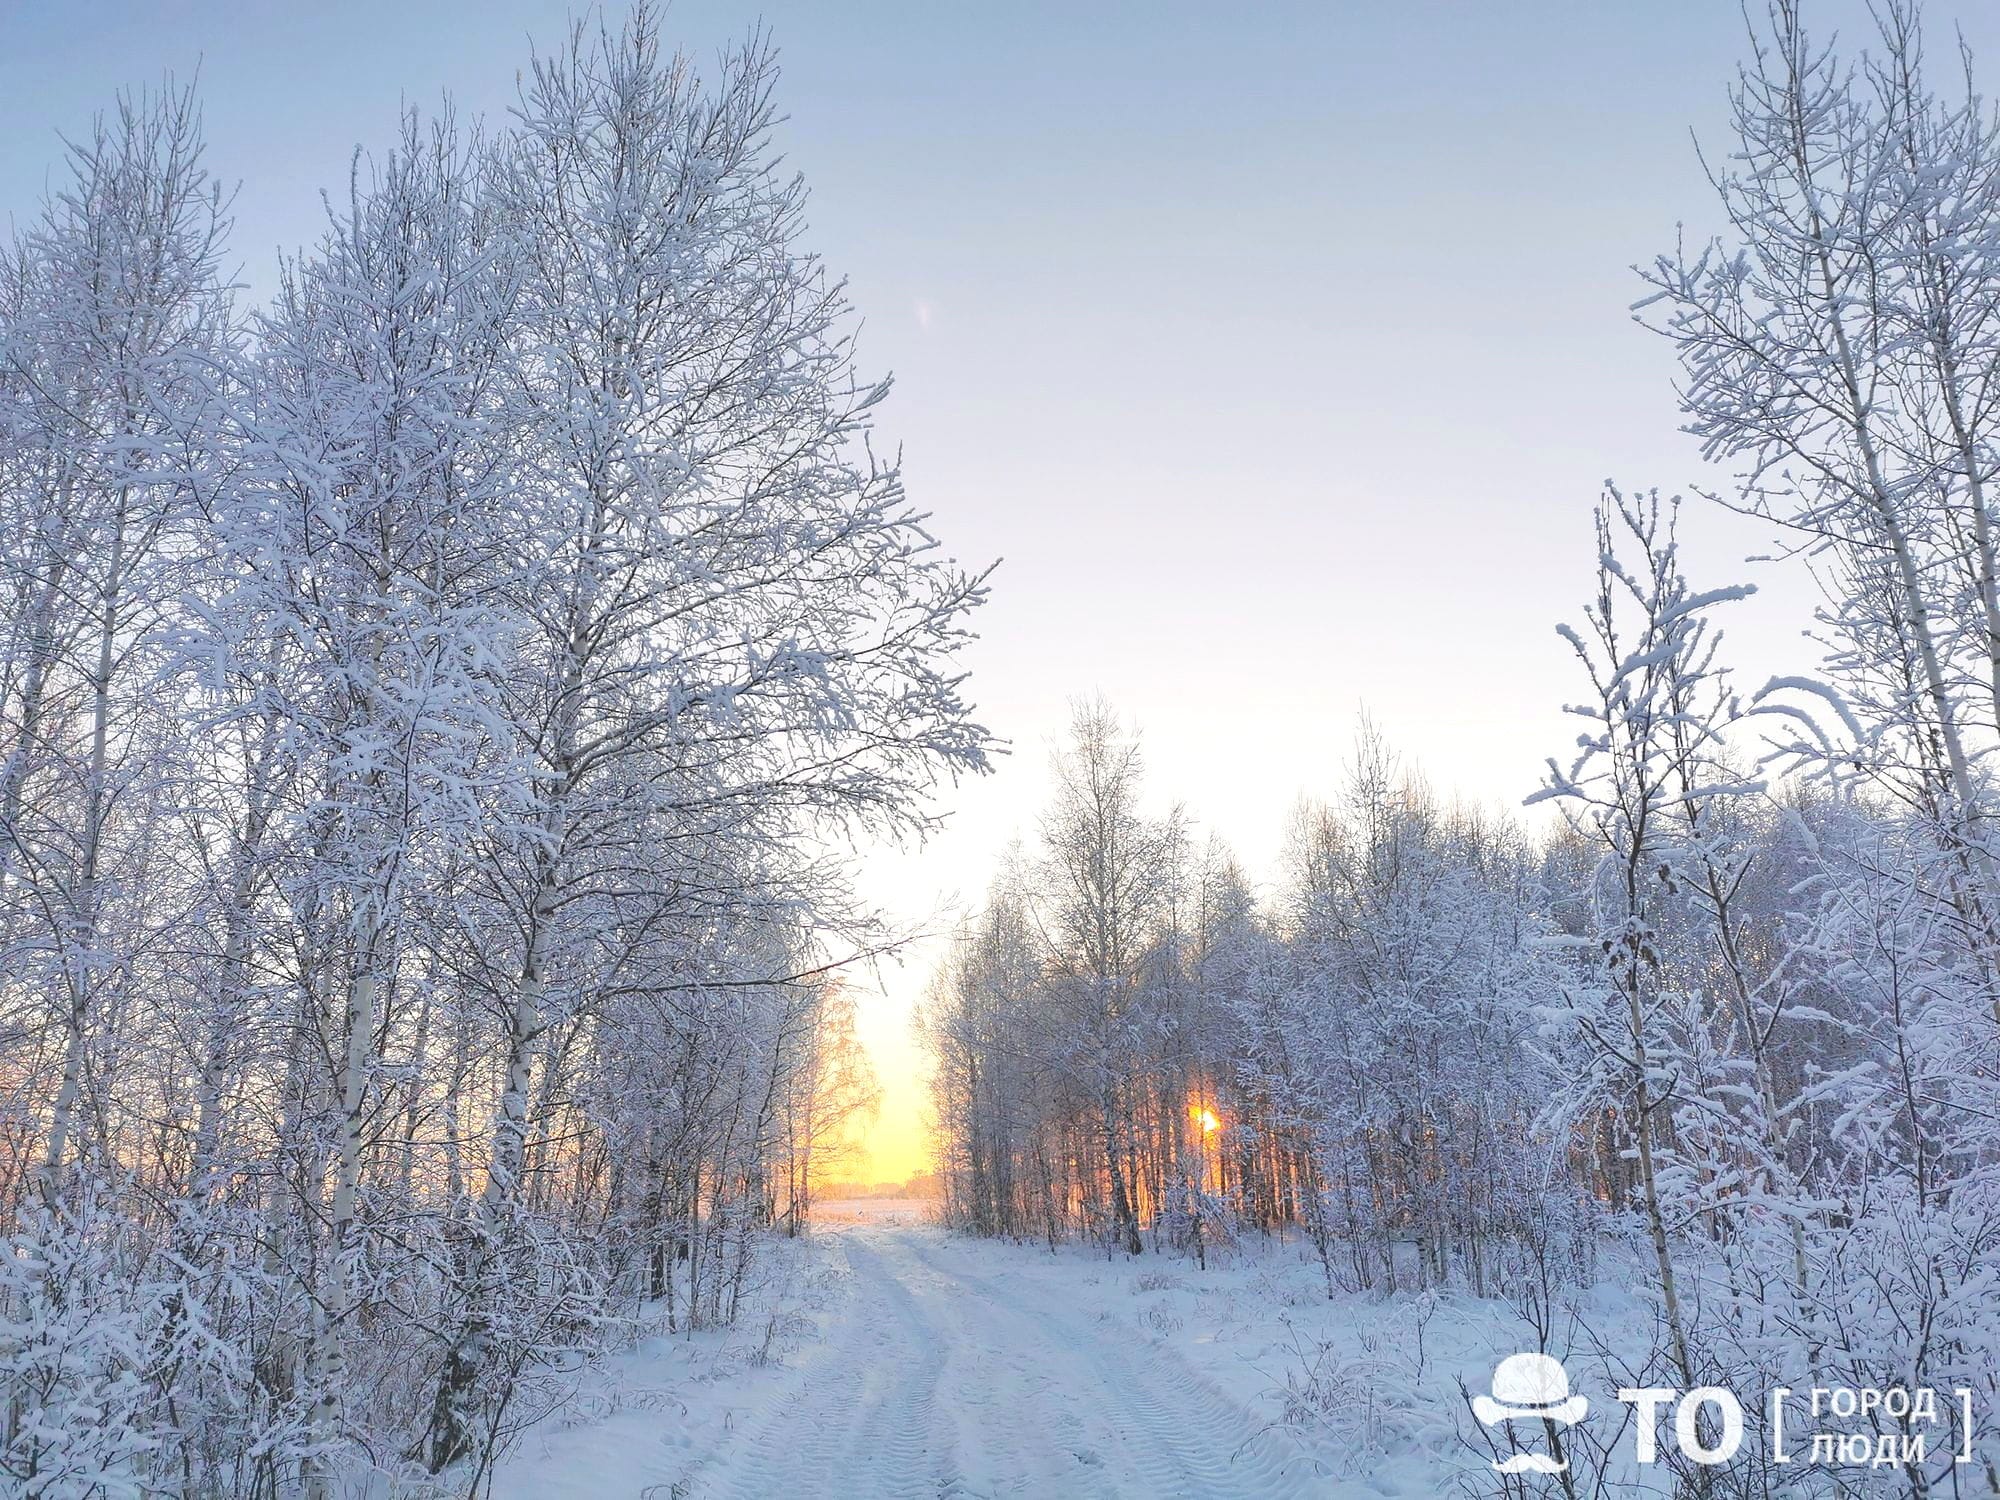 Погода и природа, Стихия в Томске и области, Томские новости, погода в Томске мороз холод понижение температуры замерзли прогноз погоды на завтра Завтра томичей ждут сильные морозы